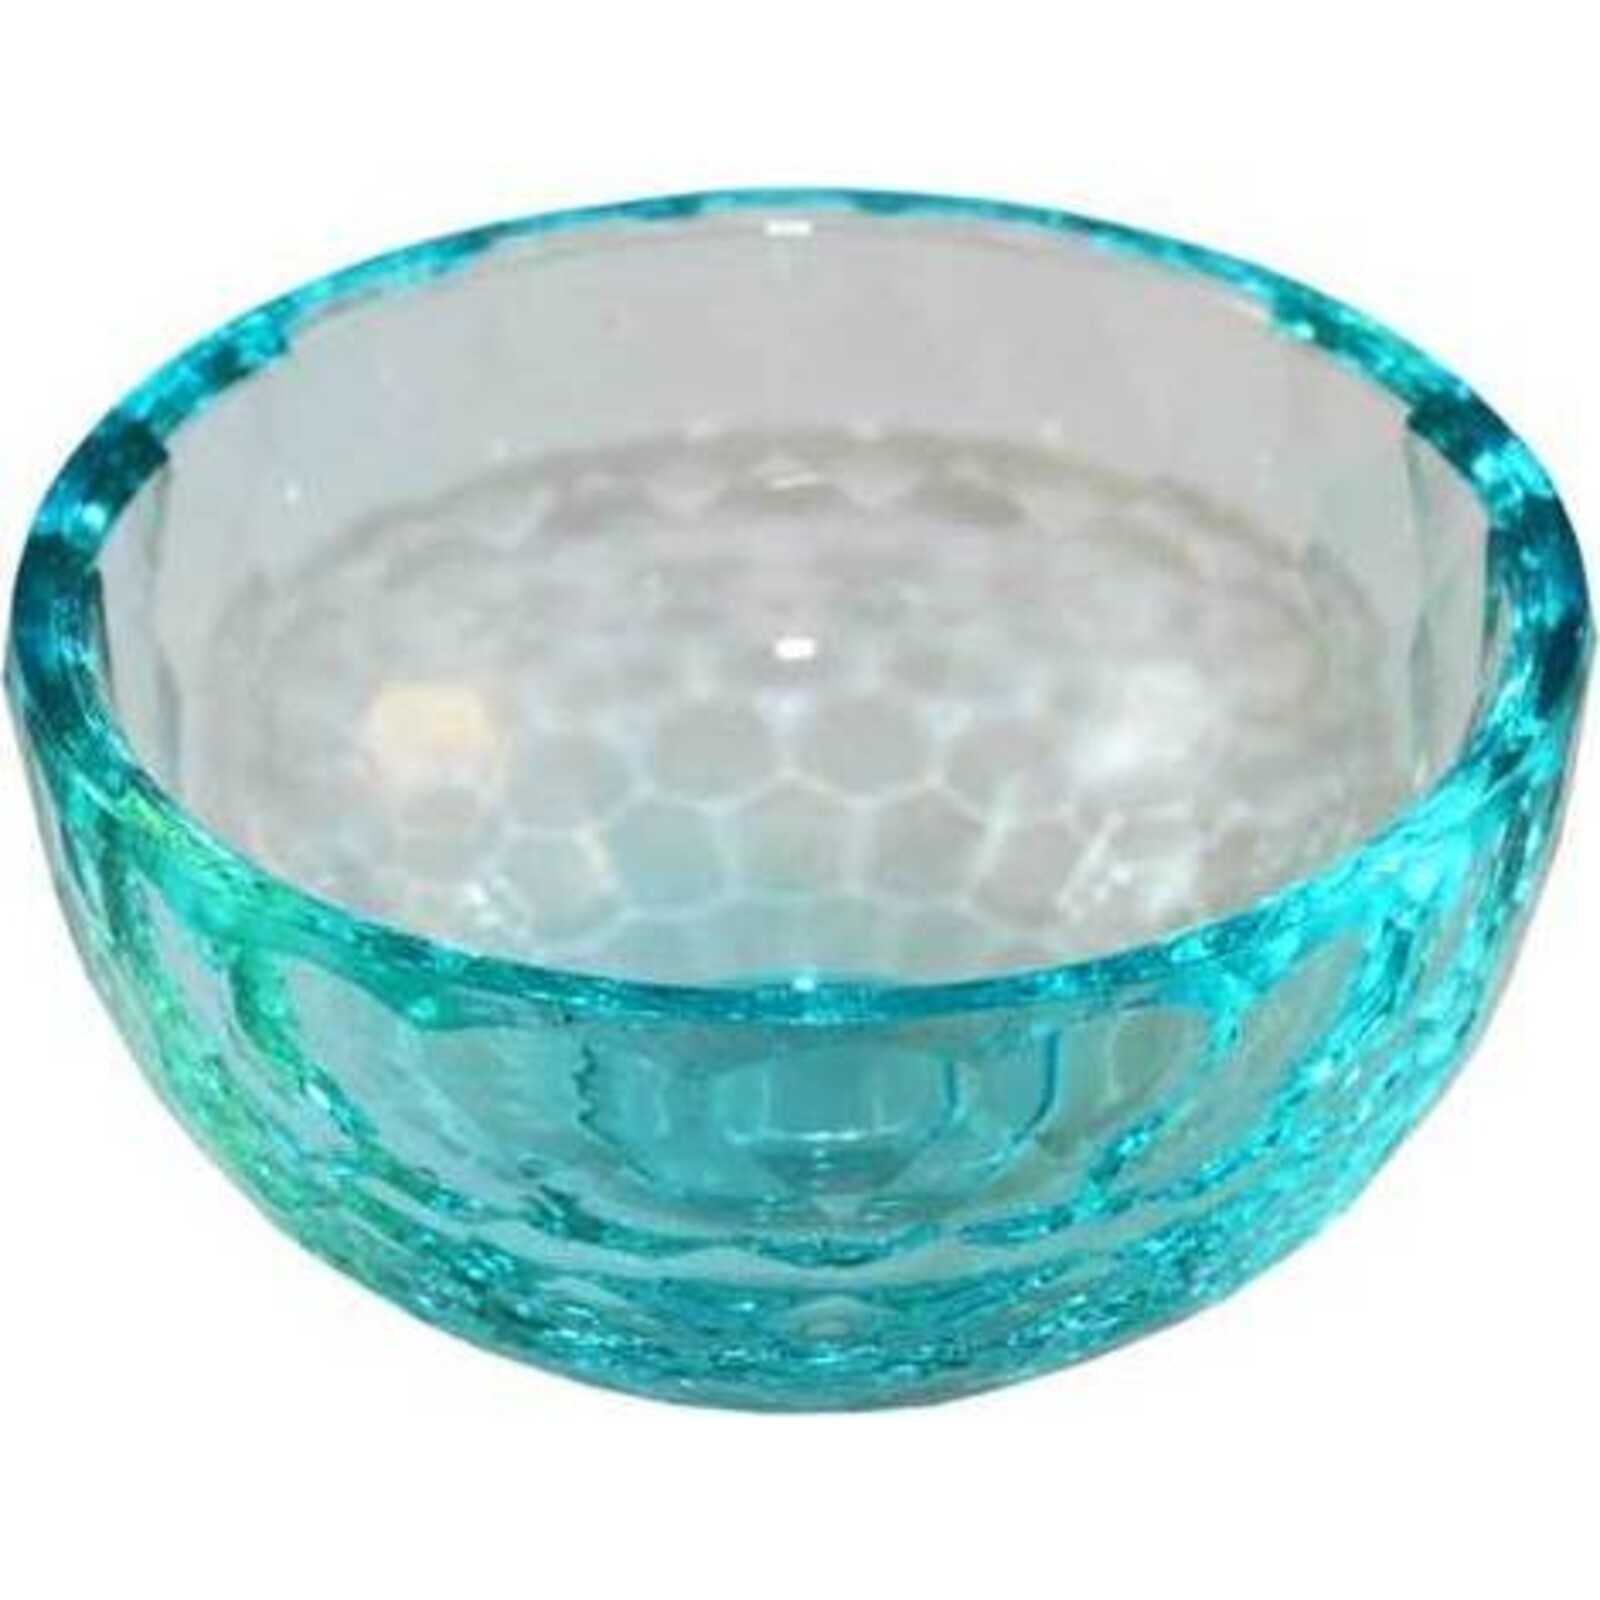 Cristal Bowl Votive - Aqua